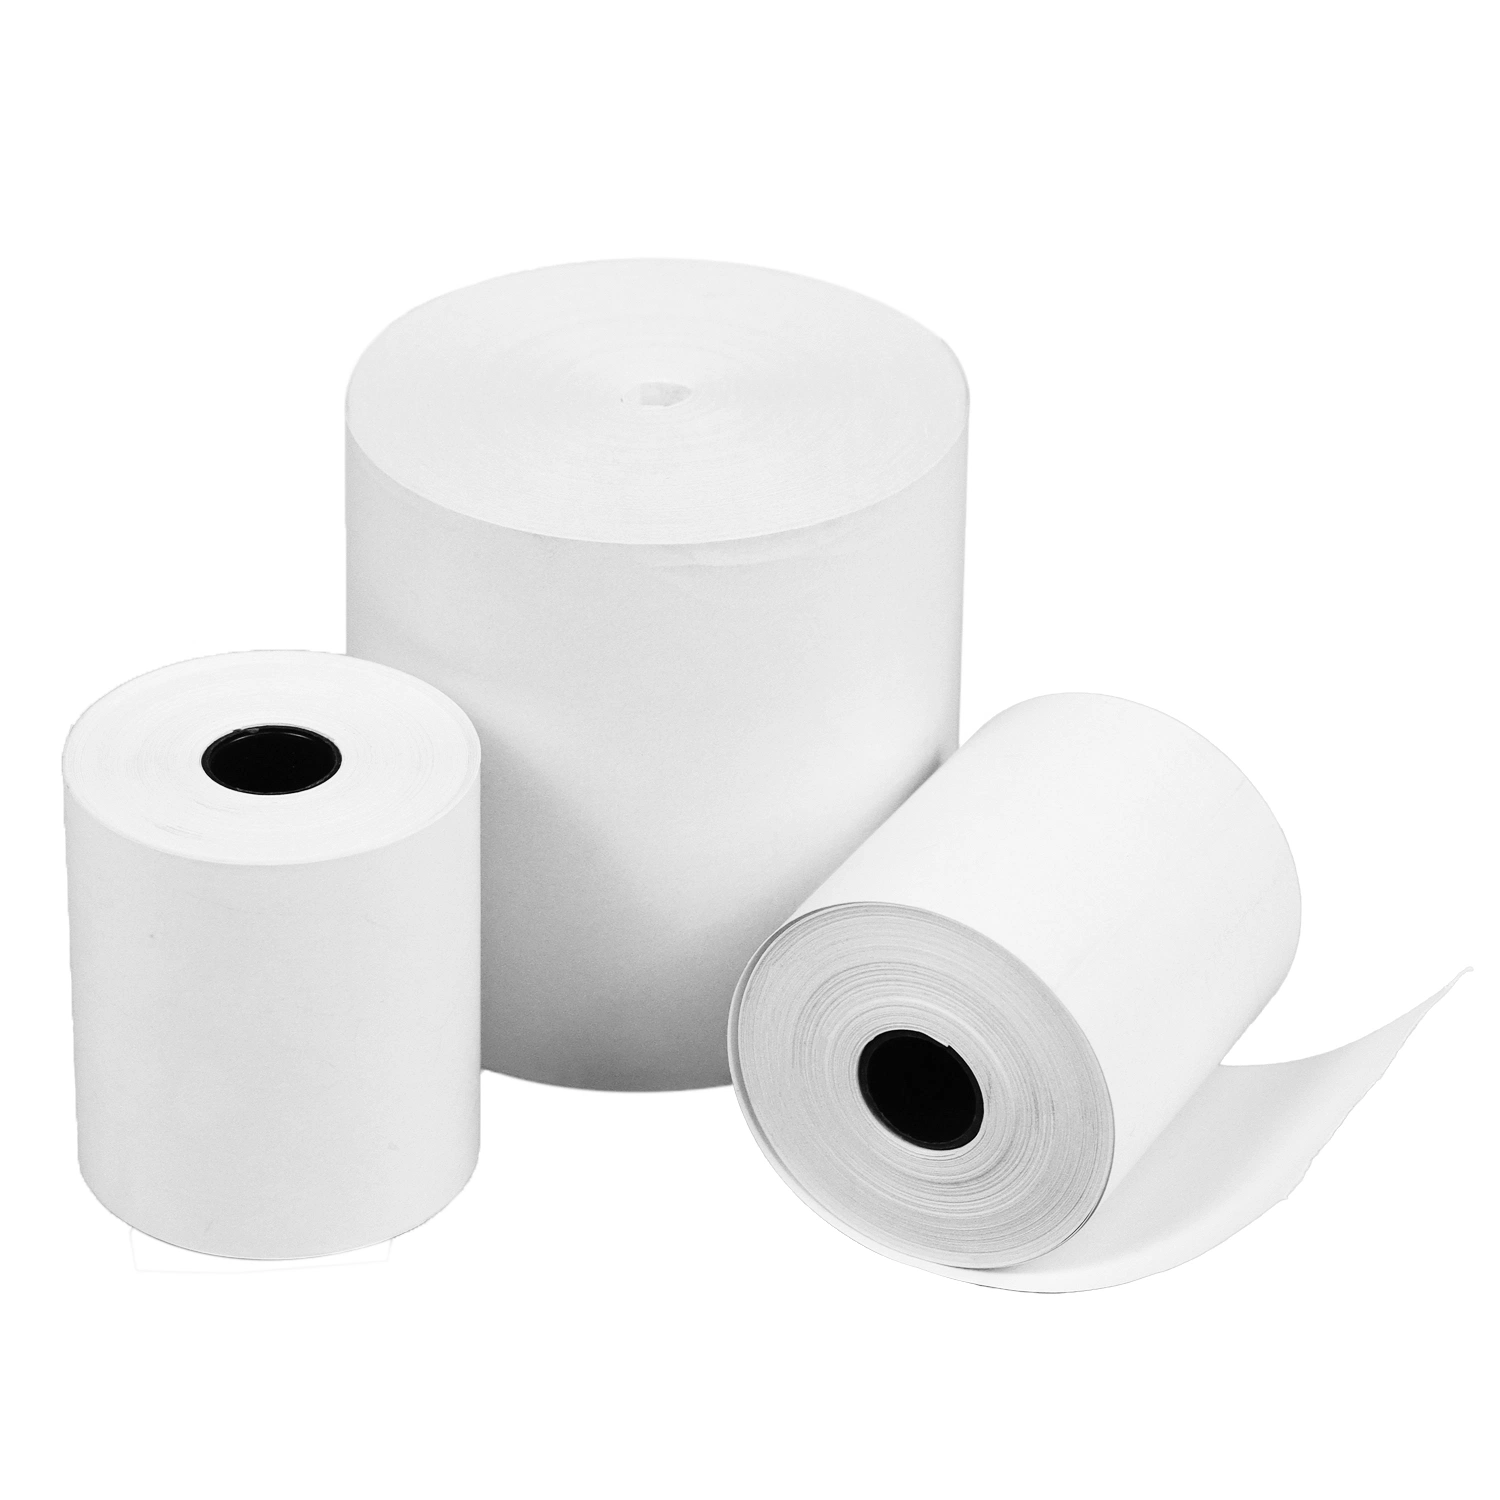 Rollo de papel térmico/ Caja Registradora térmica POS rollos de papel Terminal CAJERO AUTOMÁTICO impresora